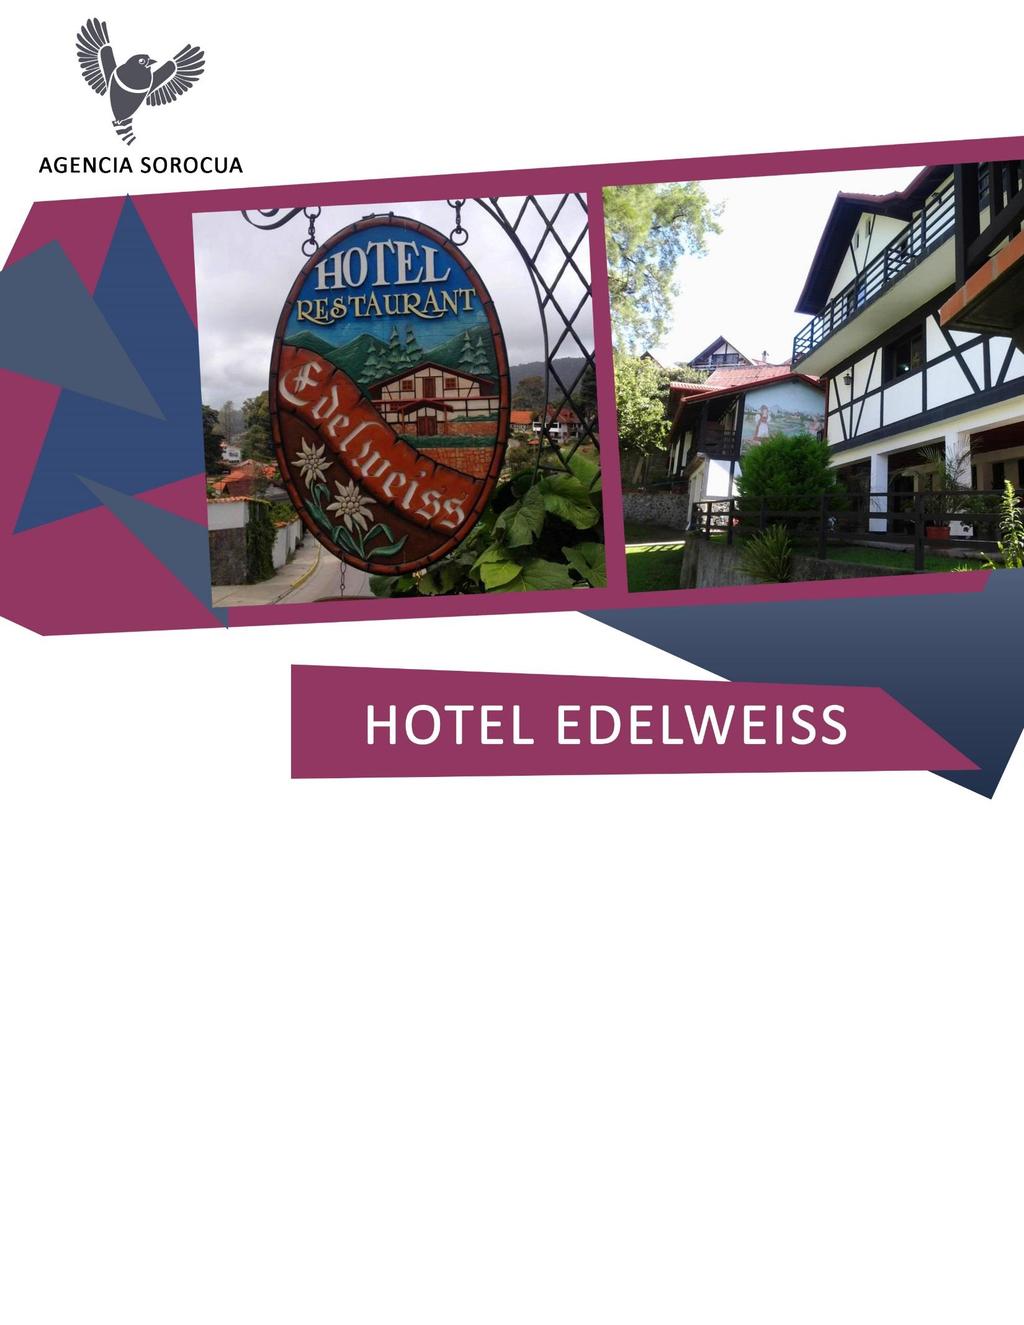 El Hotel Edelweiss se encuentra ubicado a 800 metros del centro de la Colonia Tovar por la vía de La Victoria.